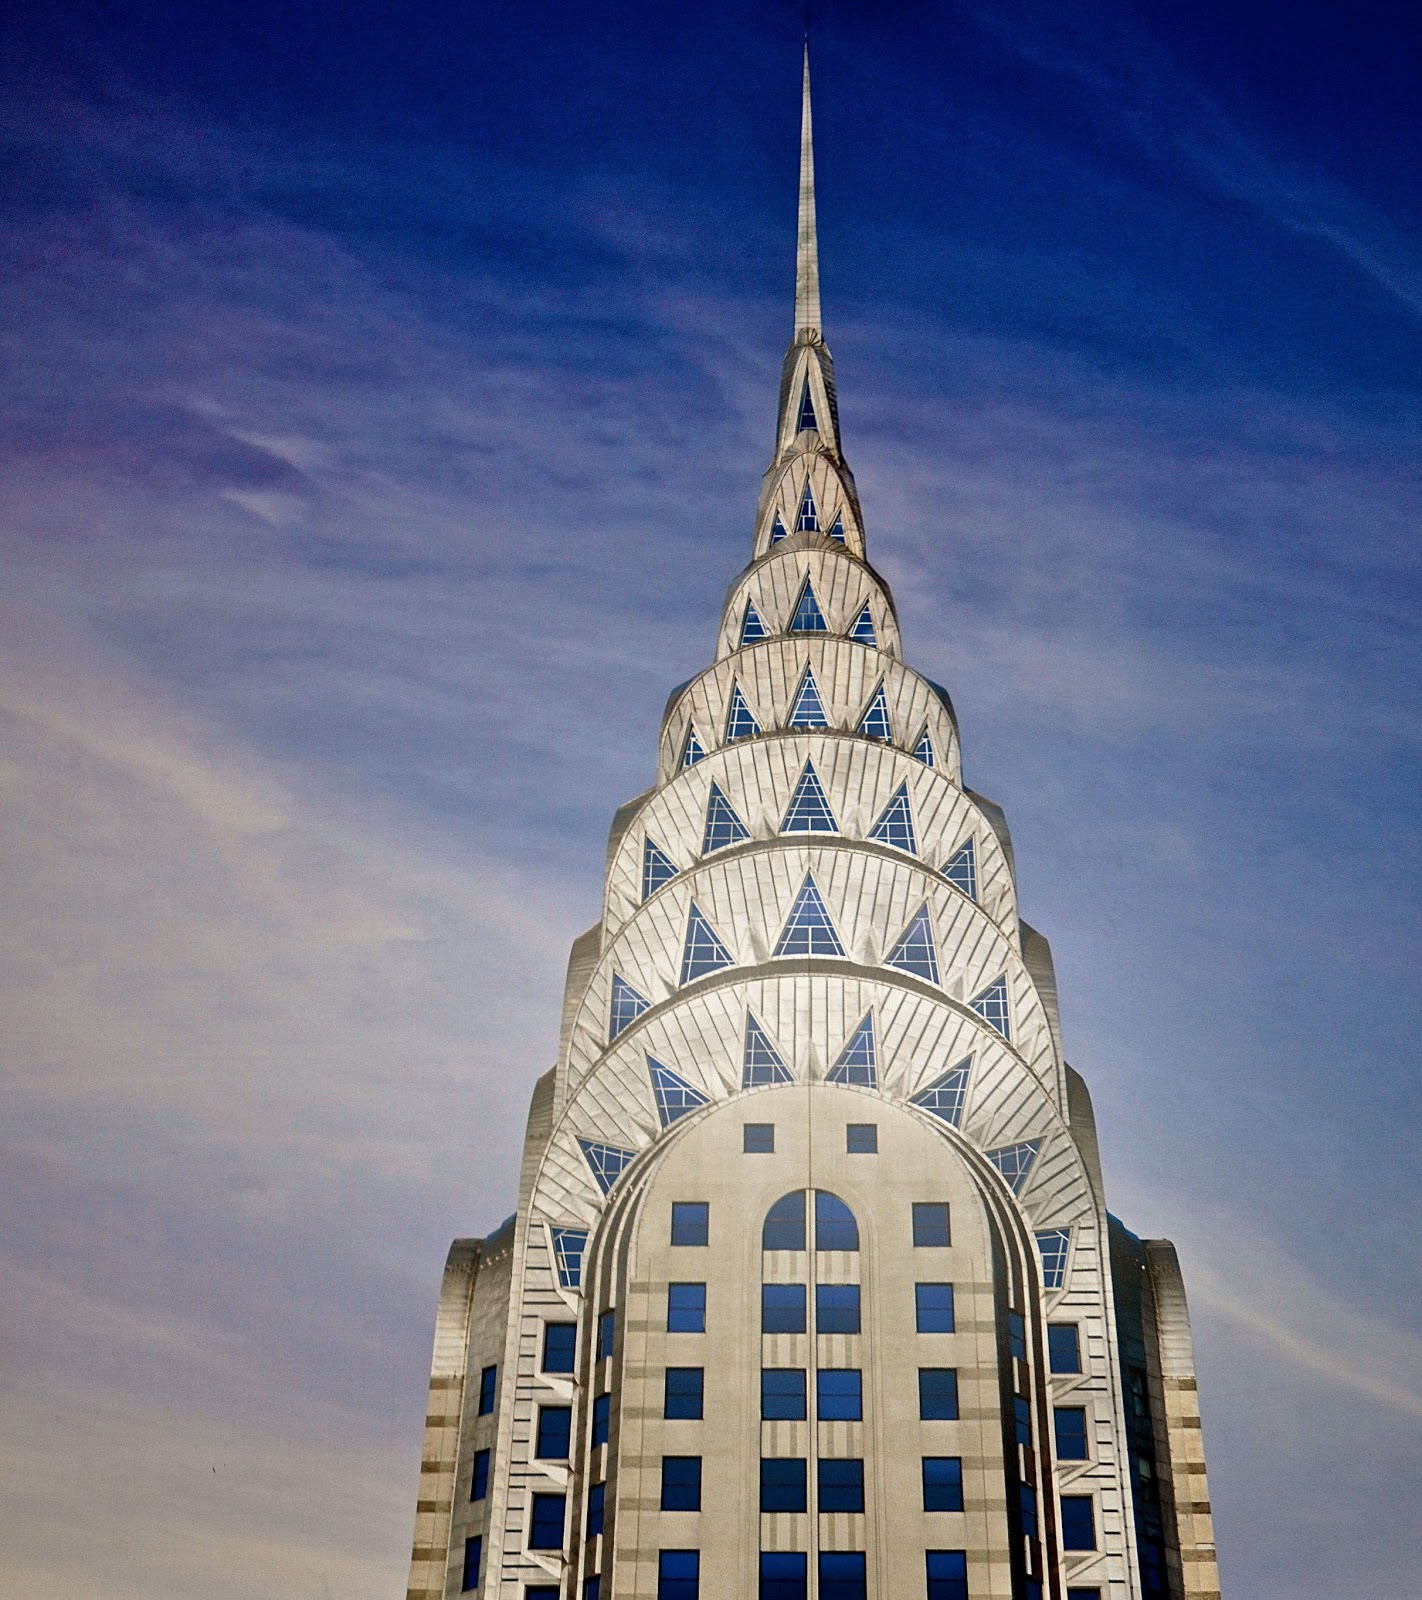 Clădirea Chrysler Building - un zgârie-nori din New York, realizat în manieră Art Deco, a fost proiectat și realizat de arhitectul american William Van Alen. PC: anartteacherindenver.blogspot.com